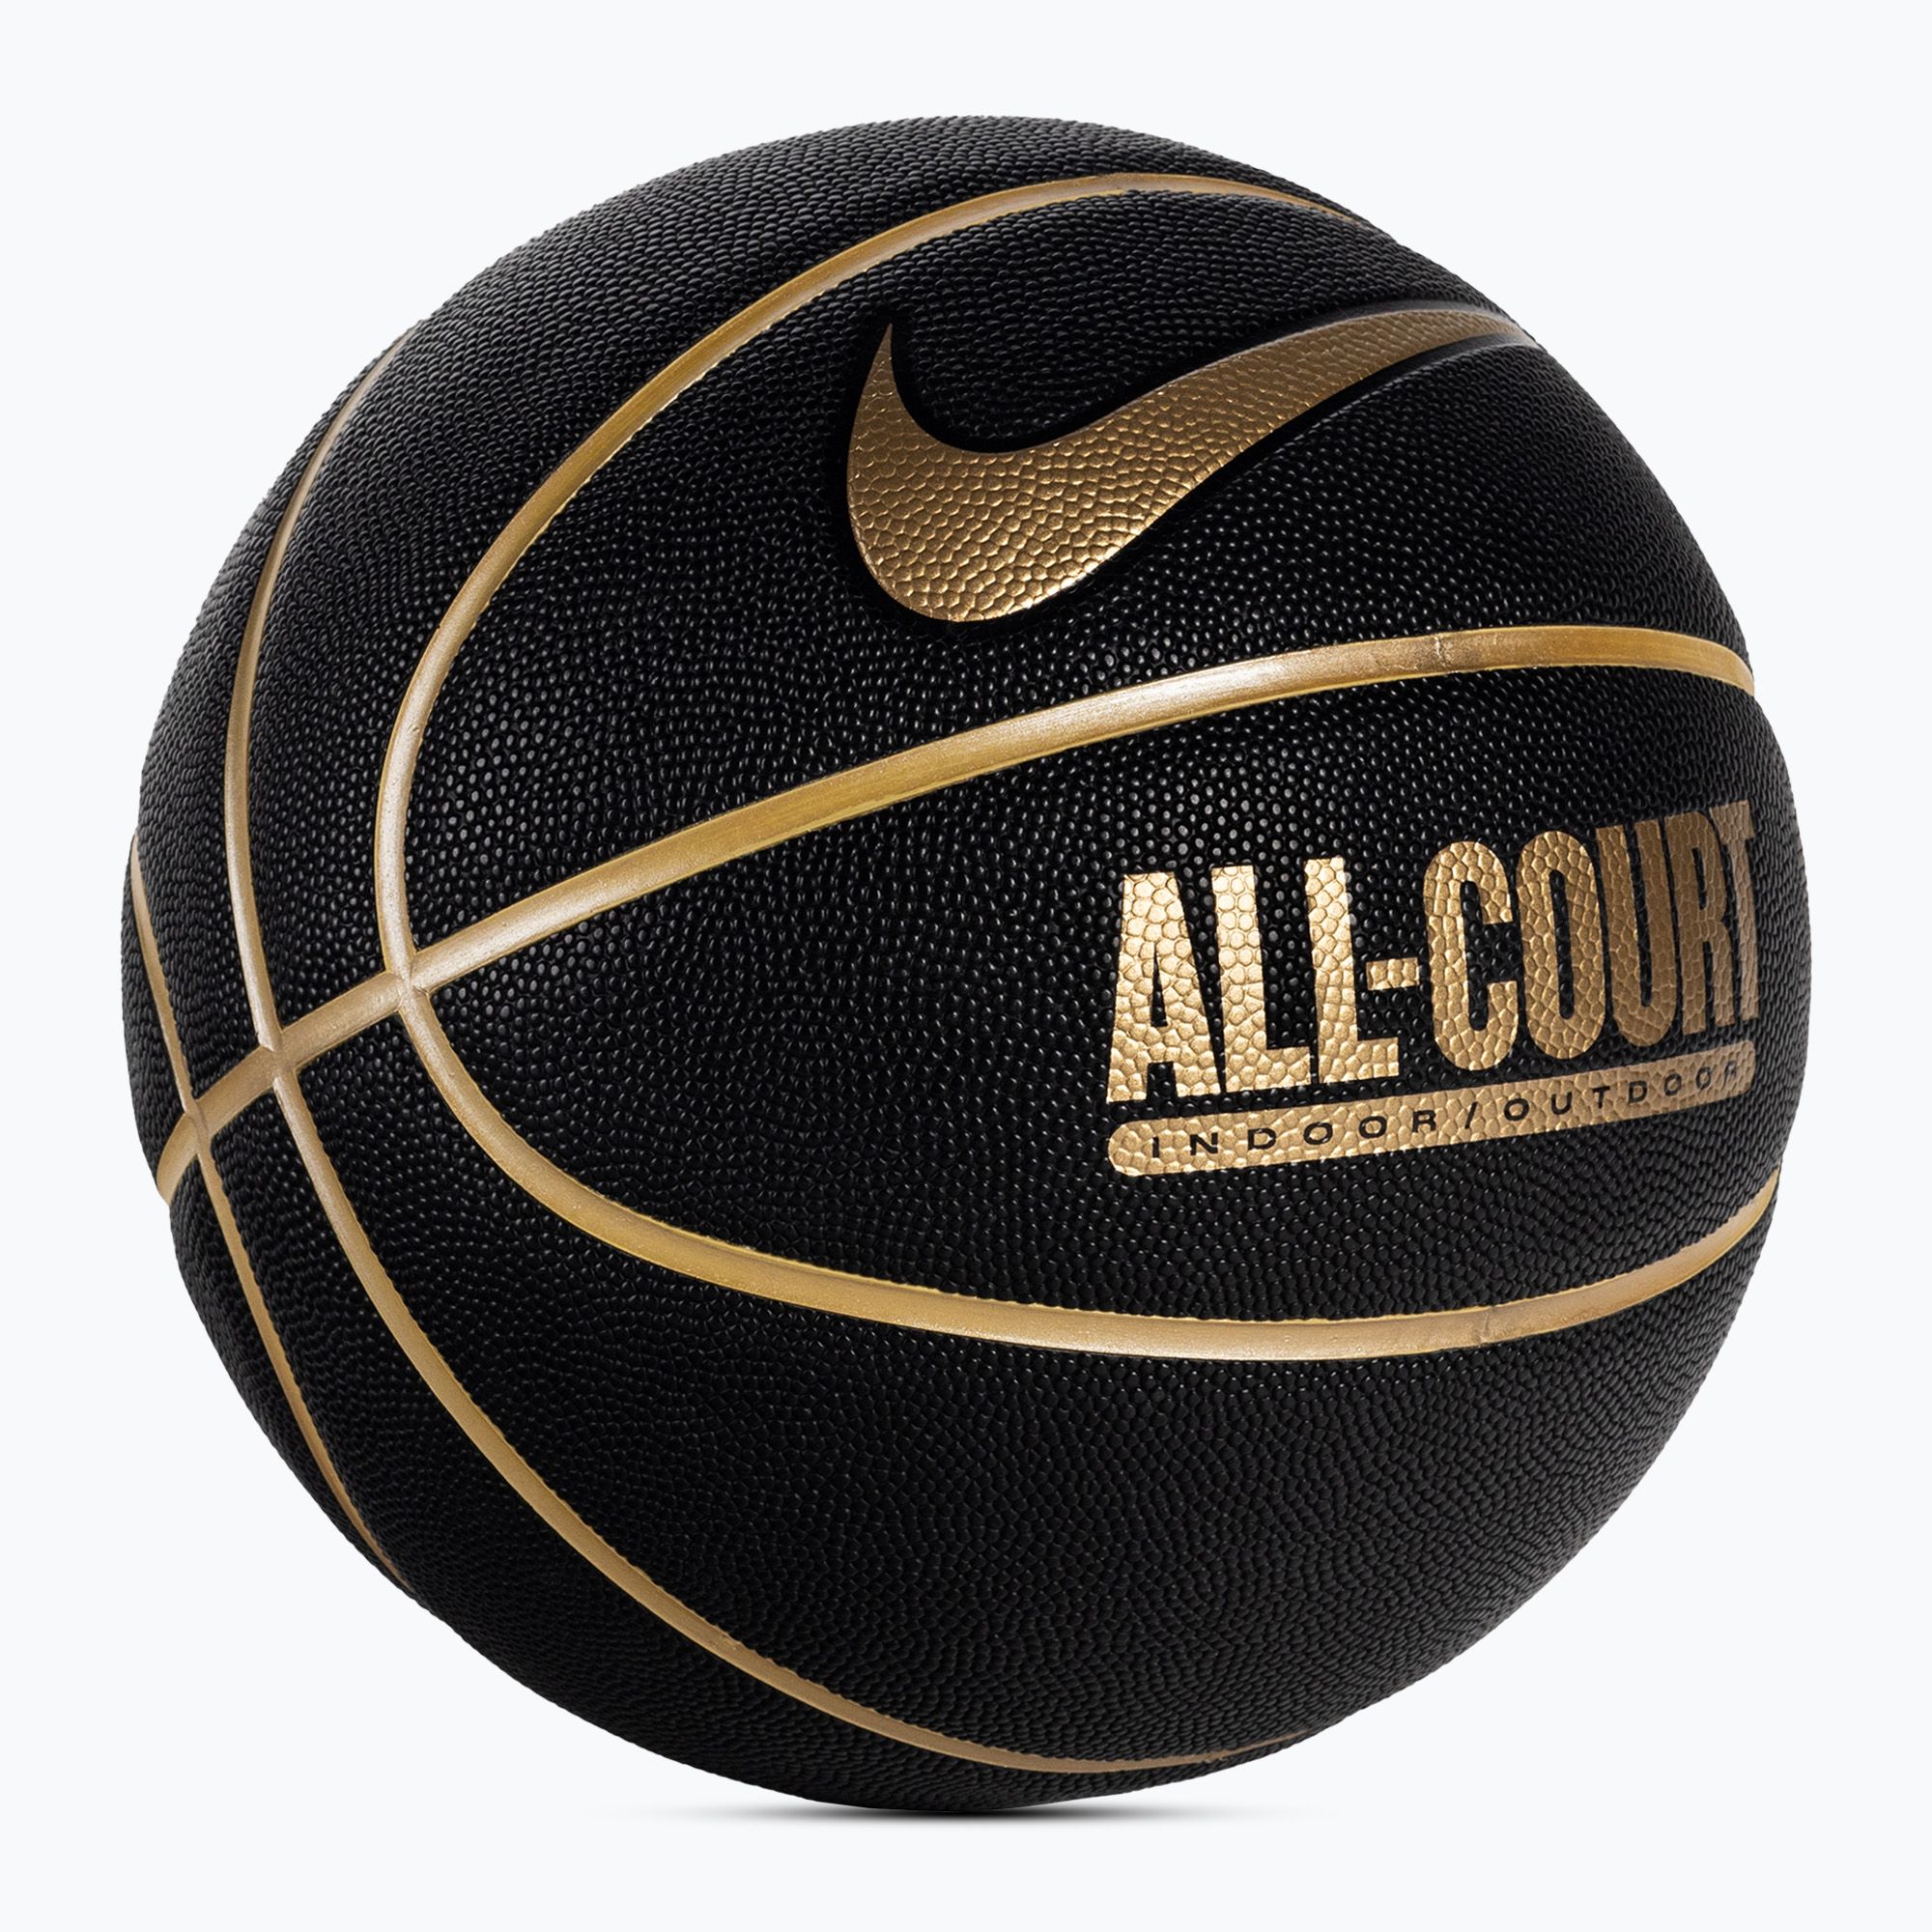 Piłka do koszykówki Nike Everyday All Court 8P Deflated black/metallic gold rozmiar 7 zdjęcie nr 2